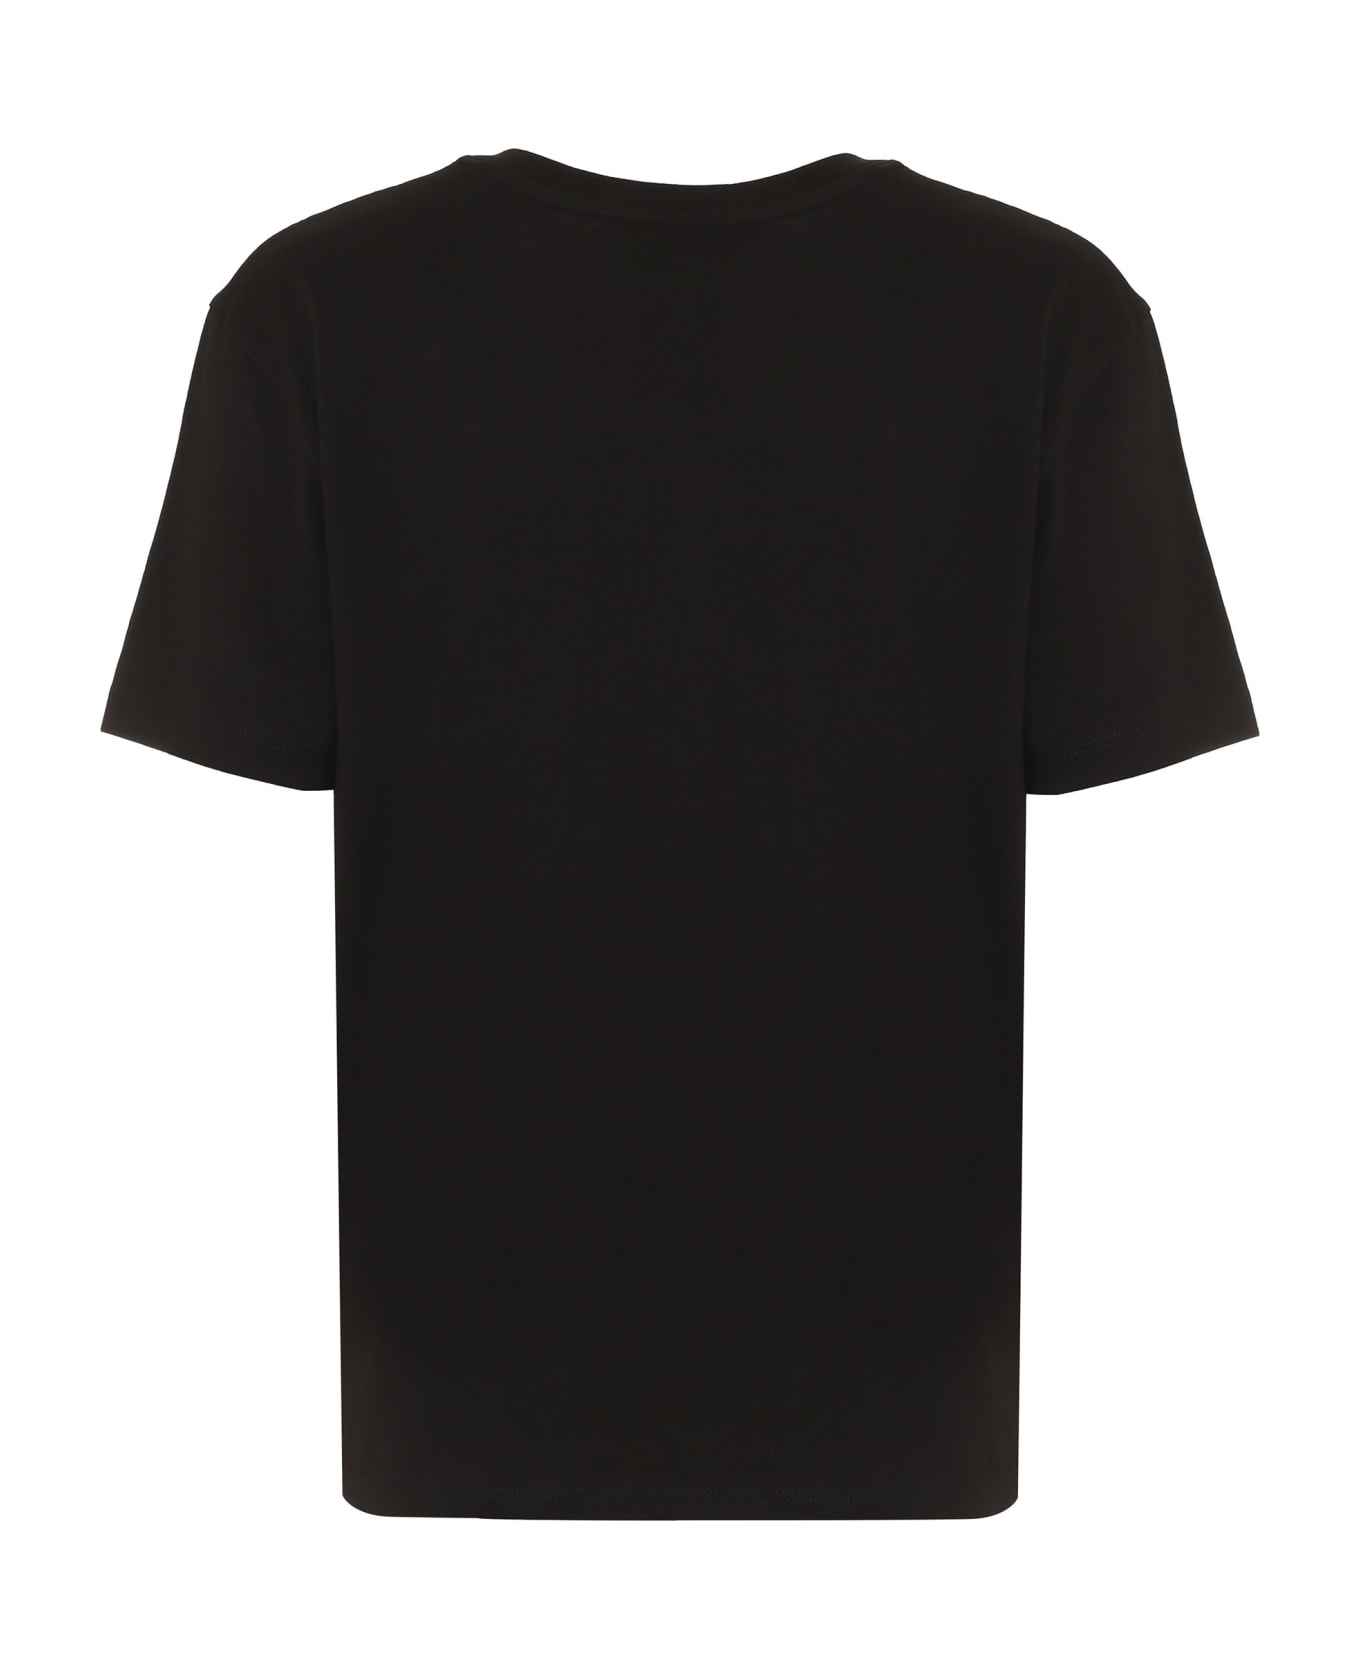 Vince Cotton T-shirt - Blk Black